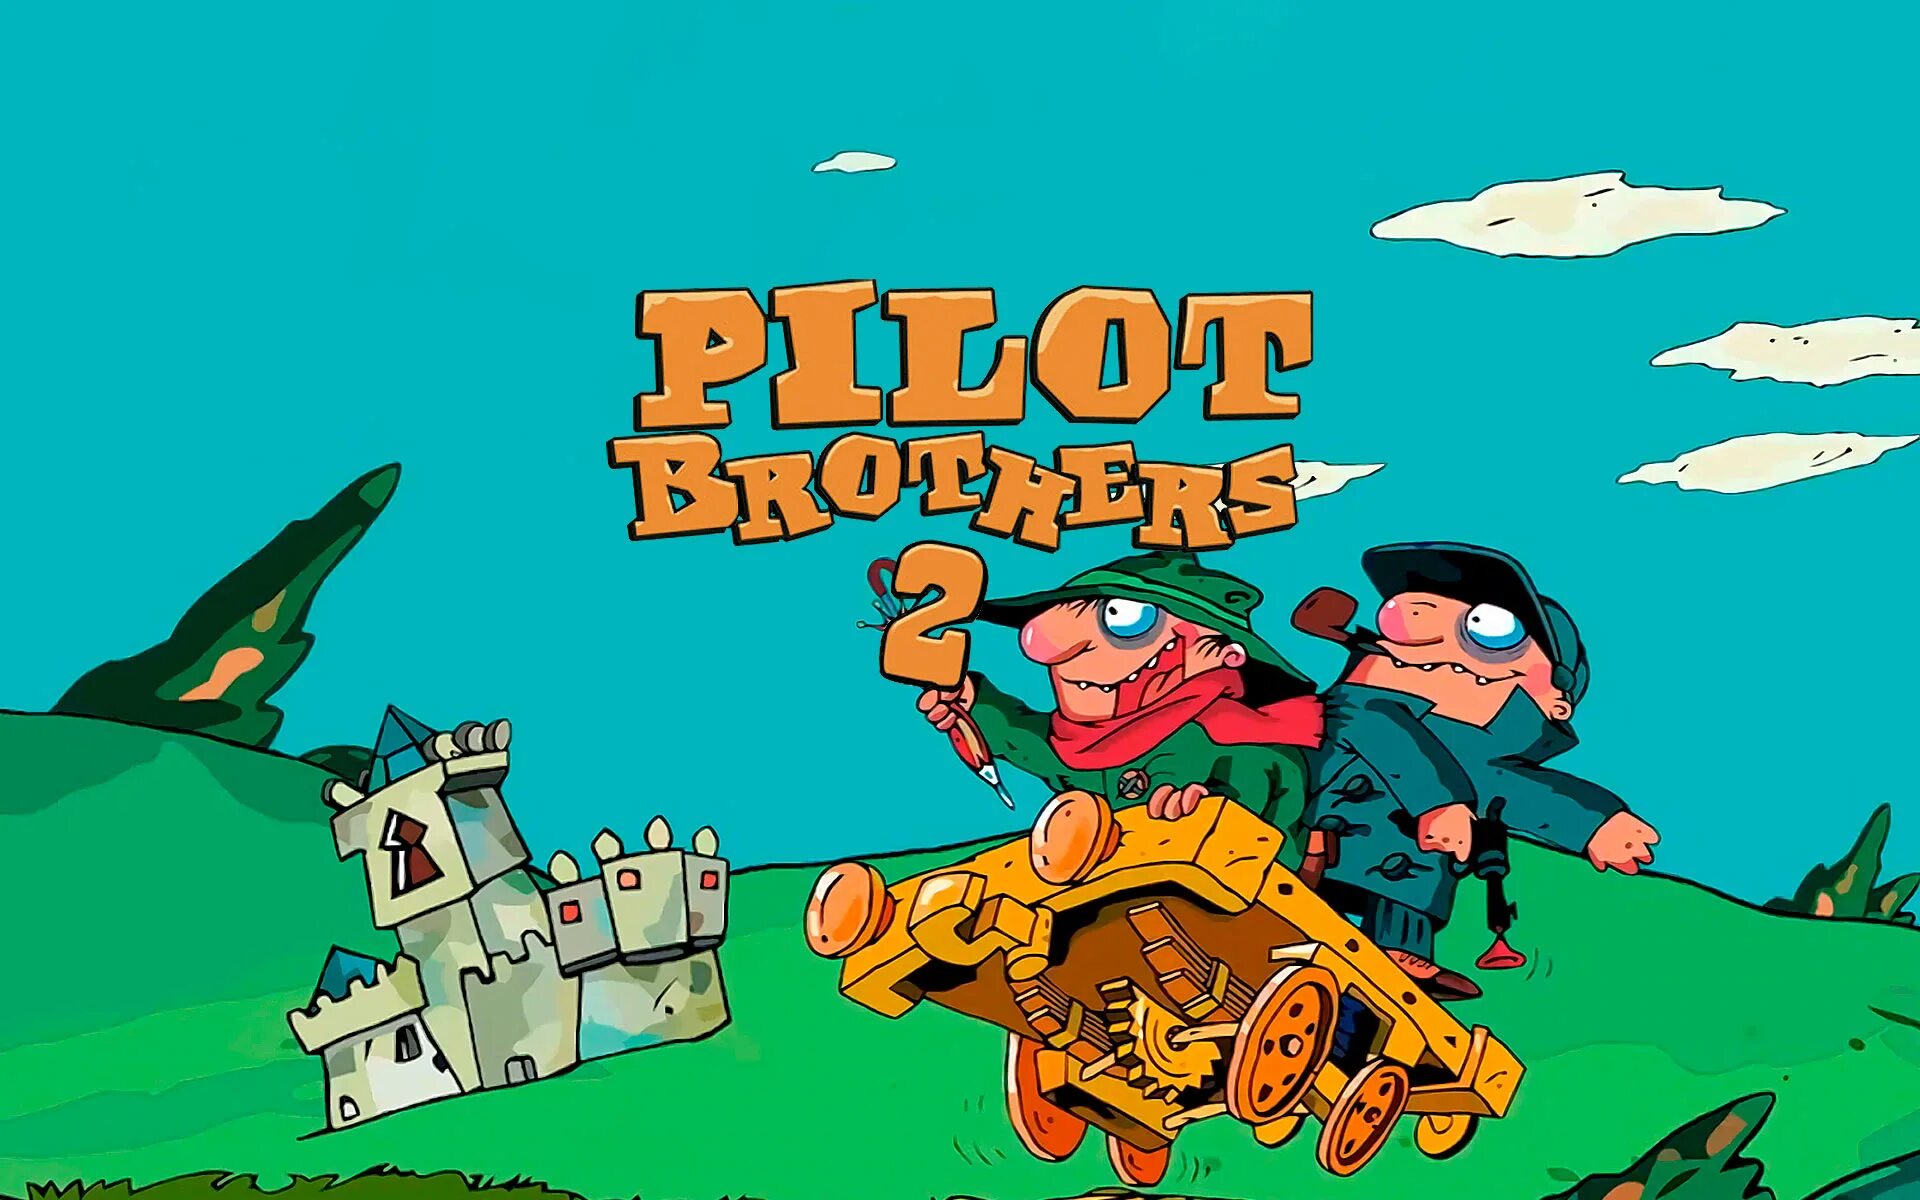 Pilot brothers. Pilot brothers II. Pilot brothers фото героев игры. Pilot brothers 2 Wallpapers.